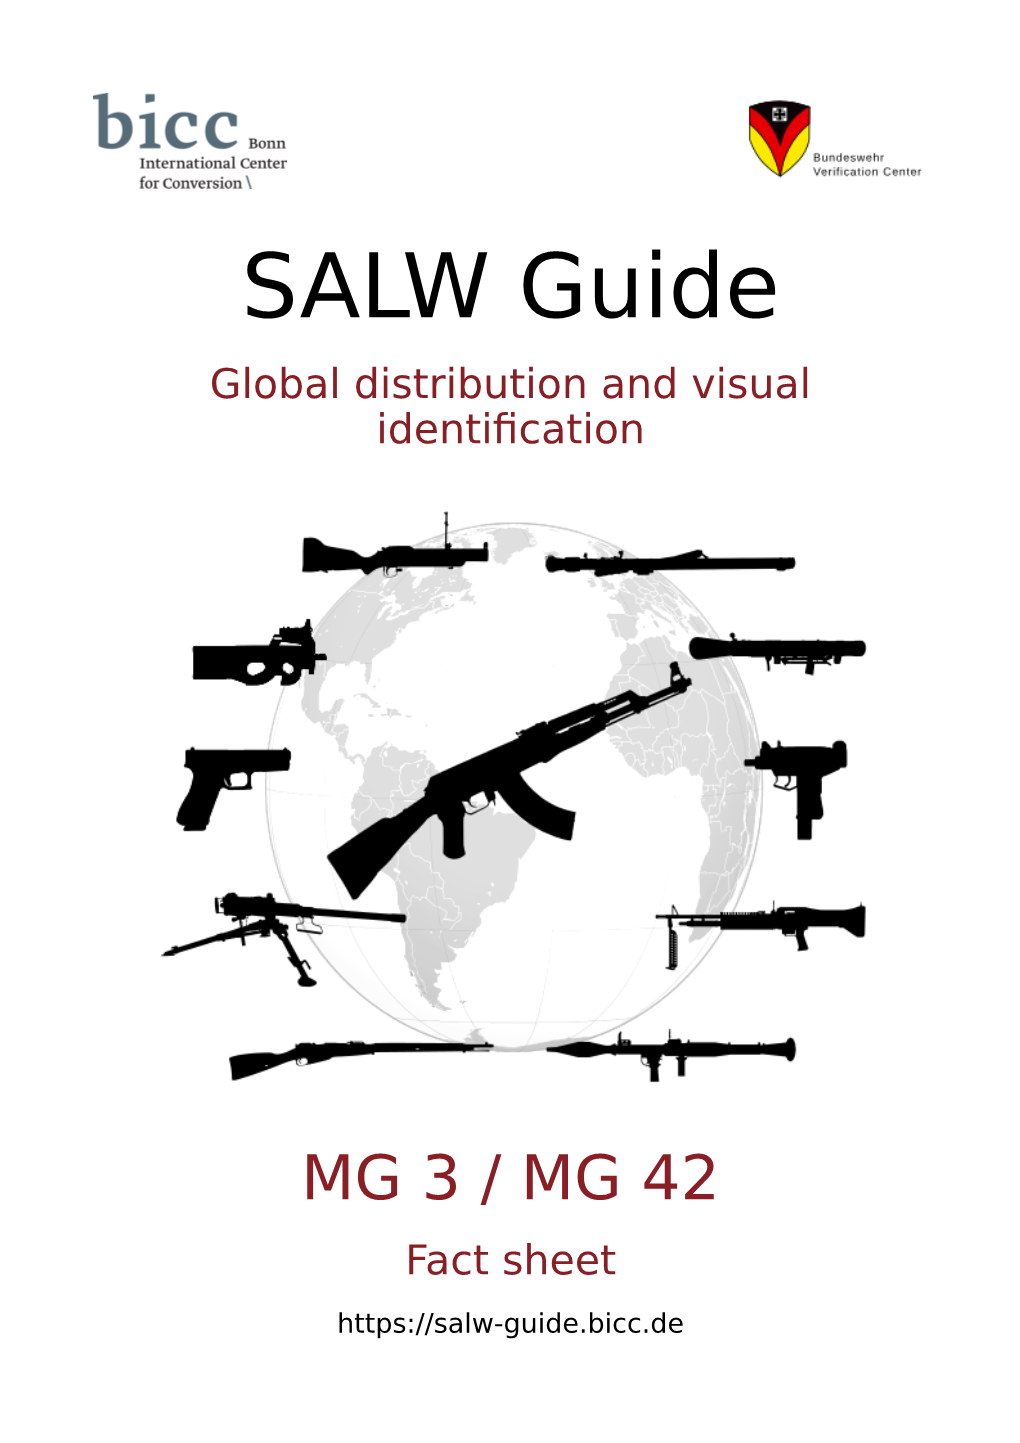 MG 3 / MG 42 Fact Sheet